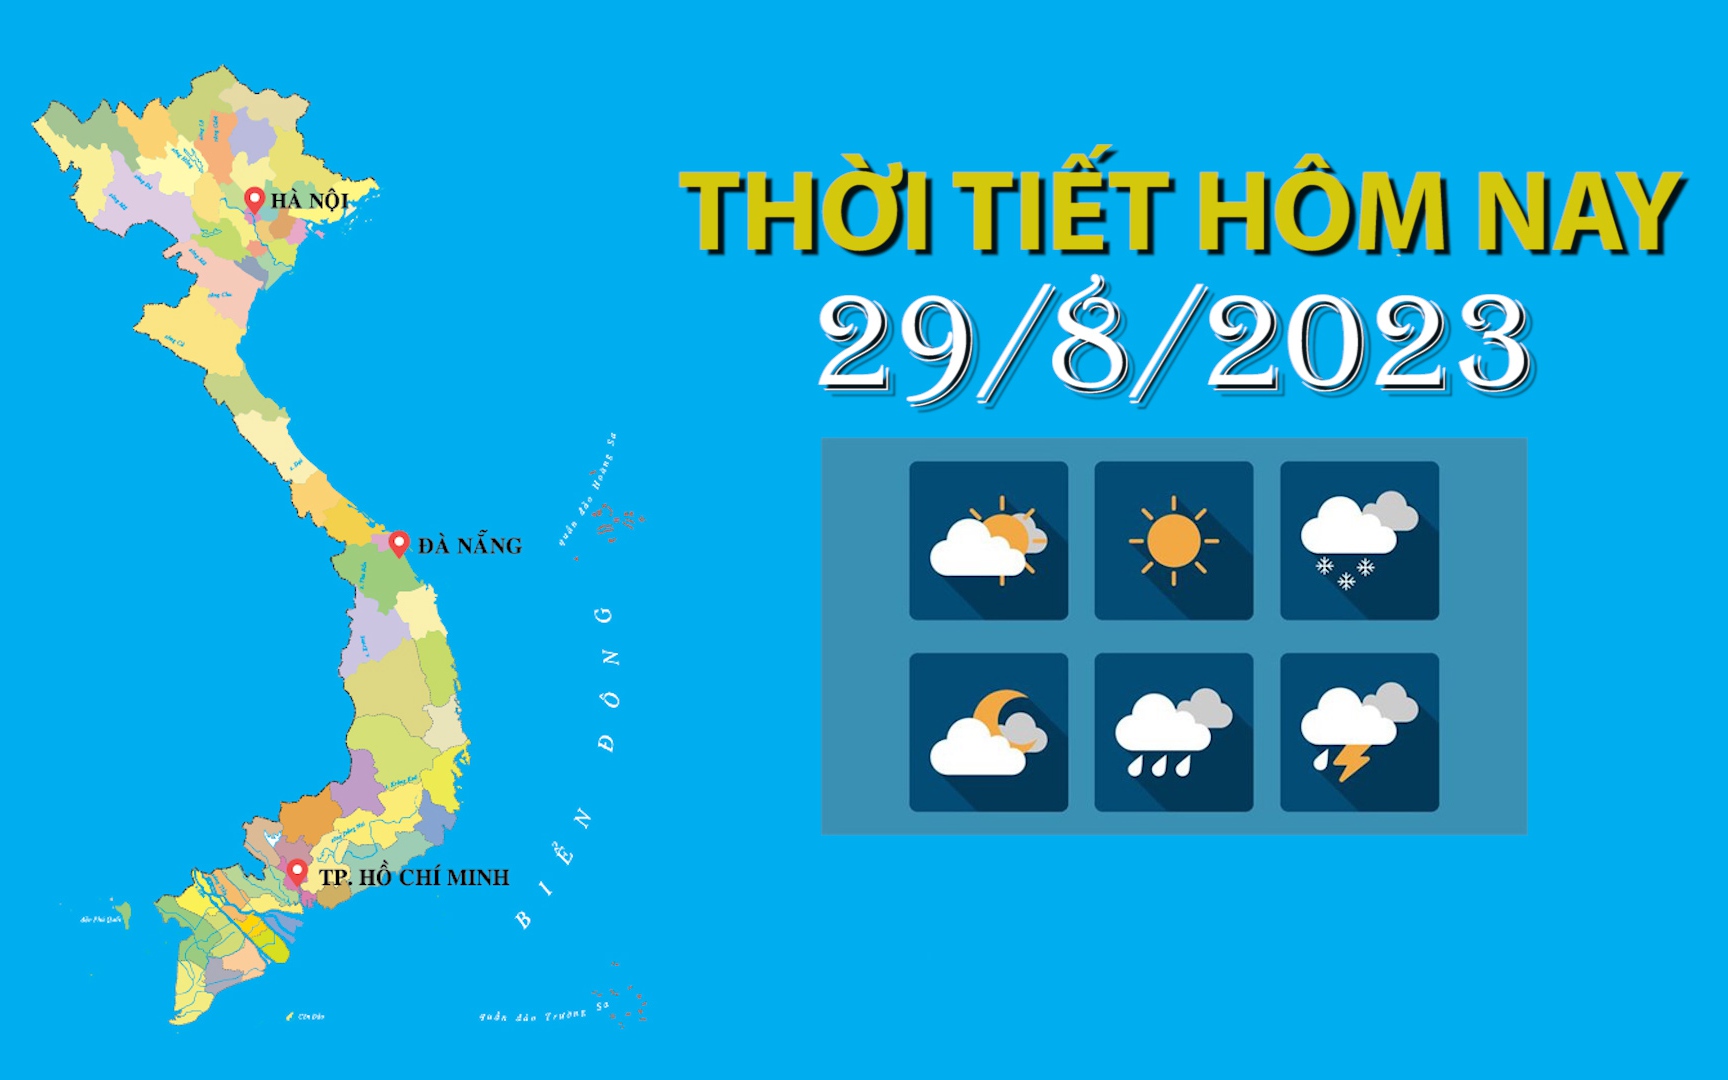 Thời tiết hôm nay 29/8/2023: Bắc Bộ trời nắng; Bắc Trung Bộ, Tây Nguyên, Nam Bộ chiều, tối có mưa